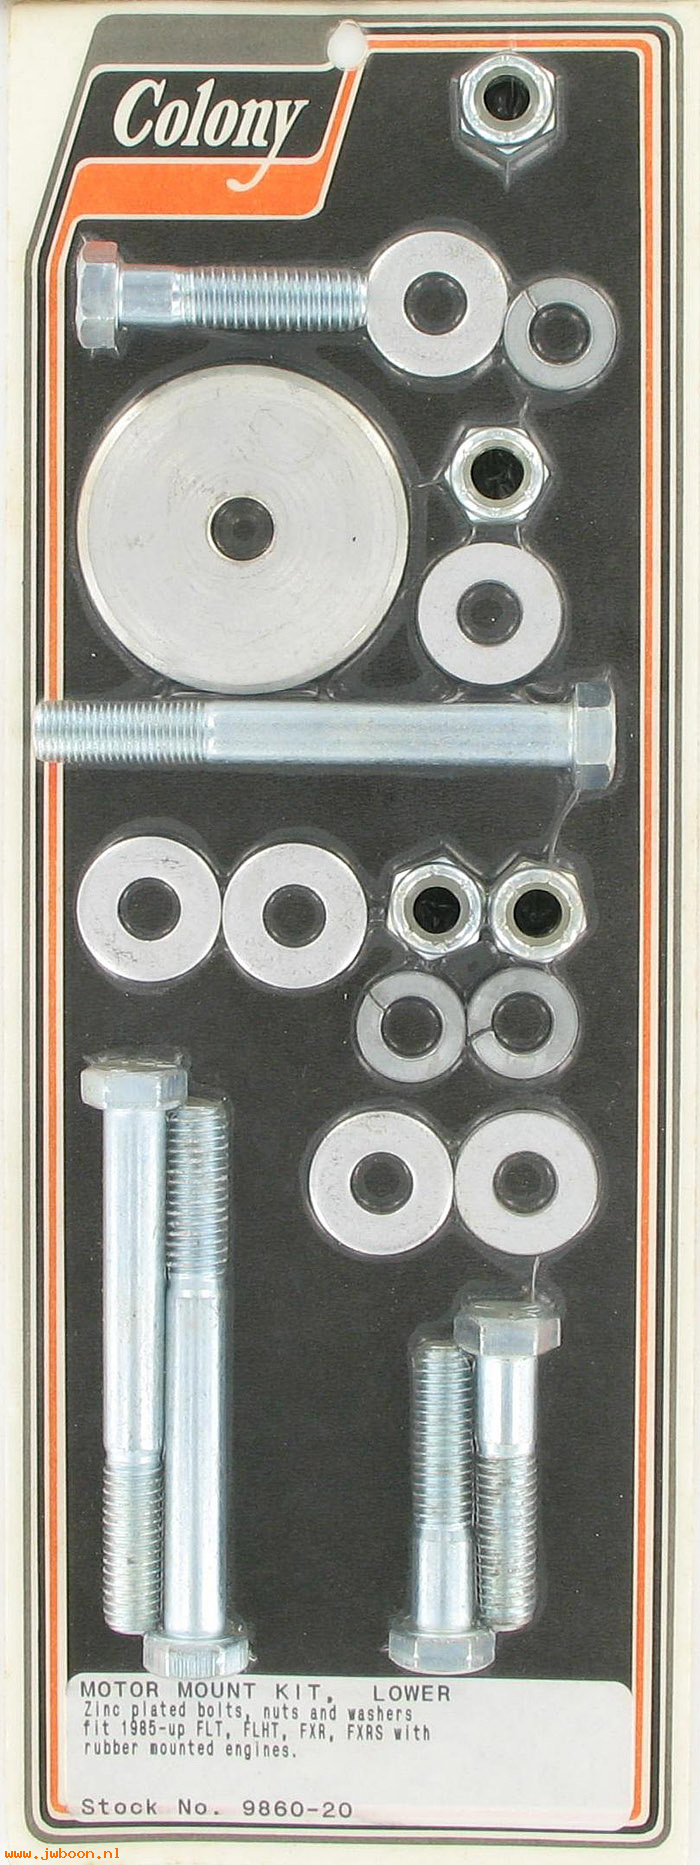 C 9860-20 (): Motor mount kit, lower - FLT, FLHT, FXR, FXRS '88-'06, rubber mt